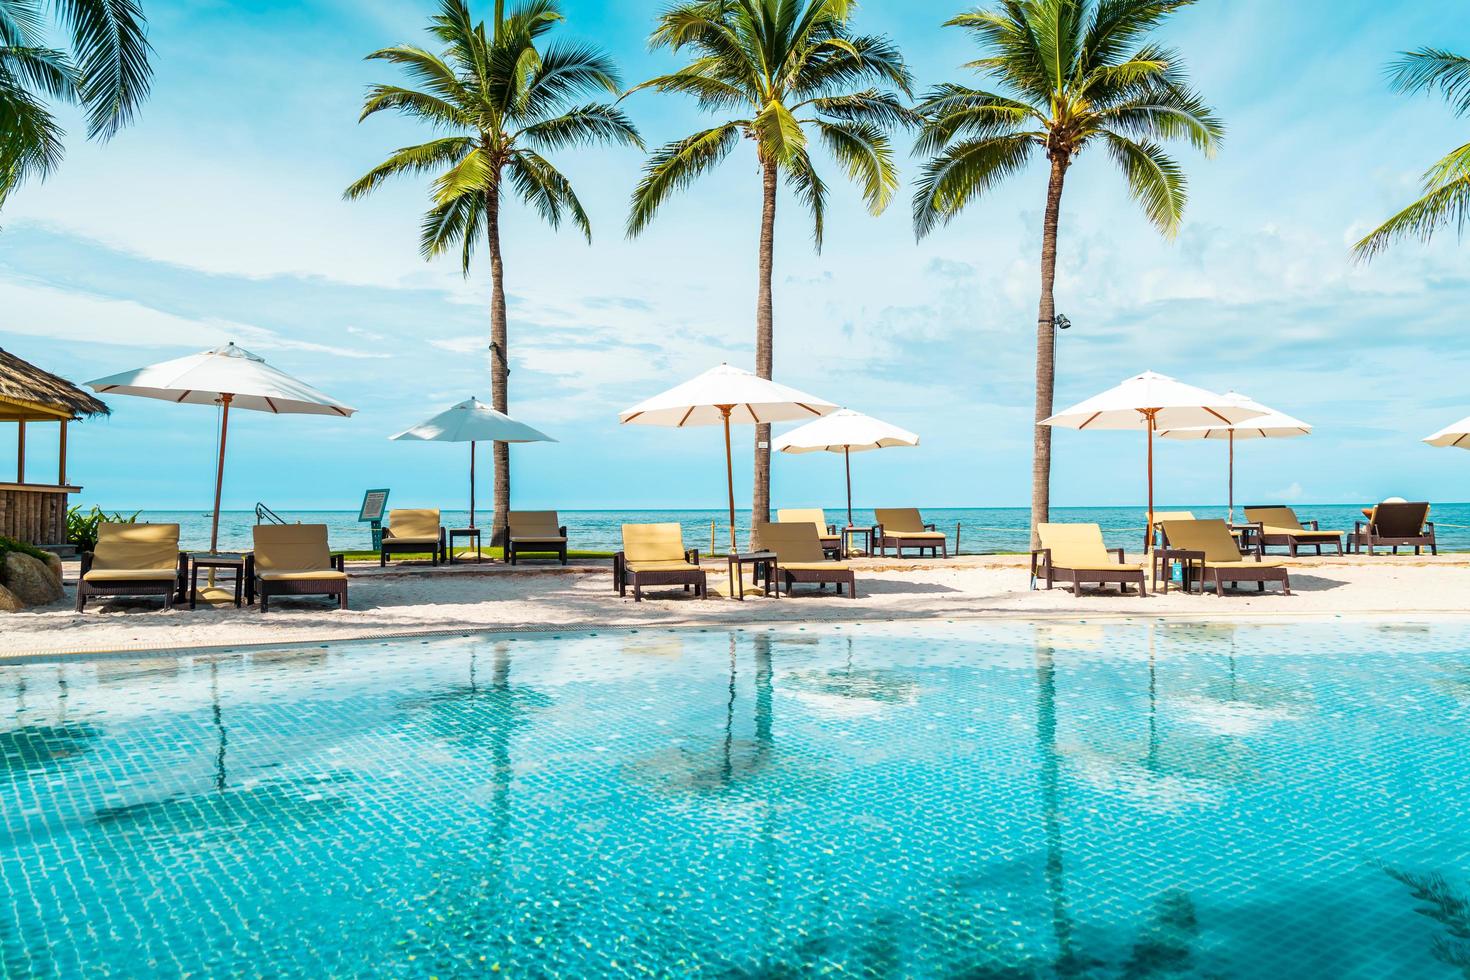 belle plage tropicale et mer avec parasol et chaise autour de la piscine de l'hôtel resort photo